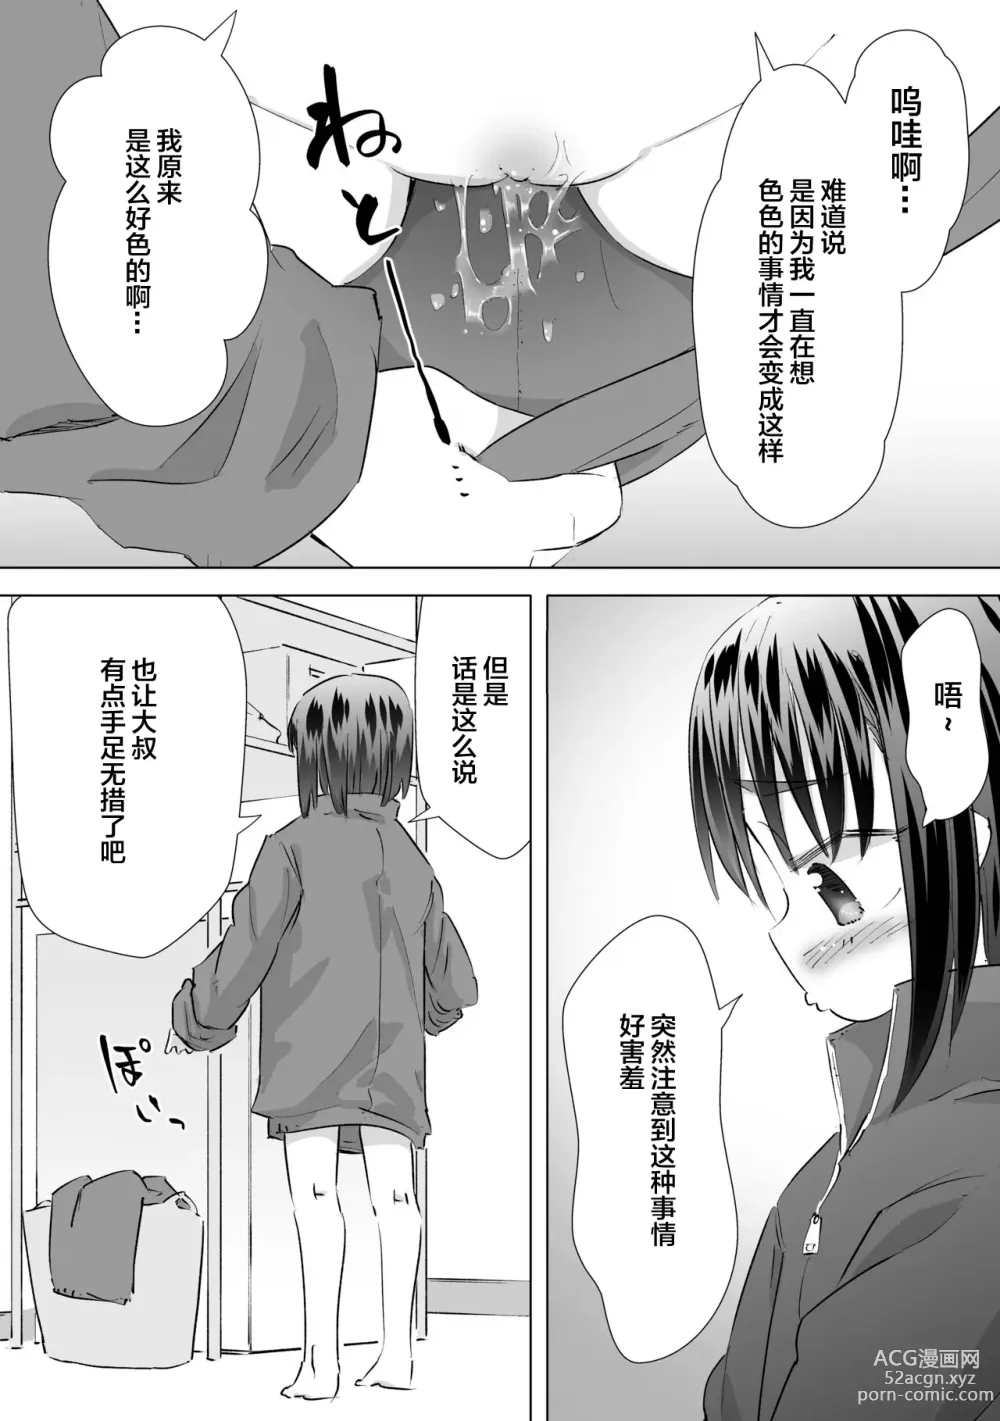 Page 16 of doujinshi 在别人家的院子里忍不住尿了出来被大叔发现后不为人知的事情